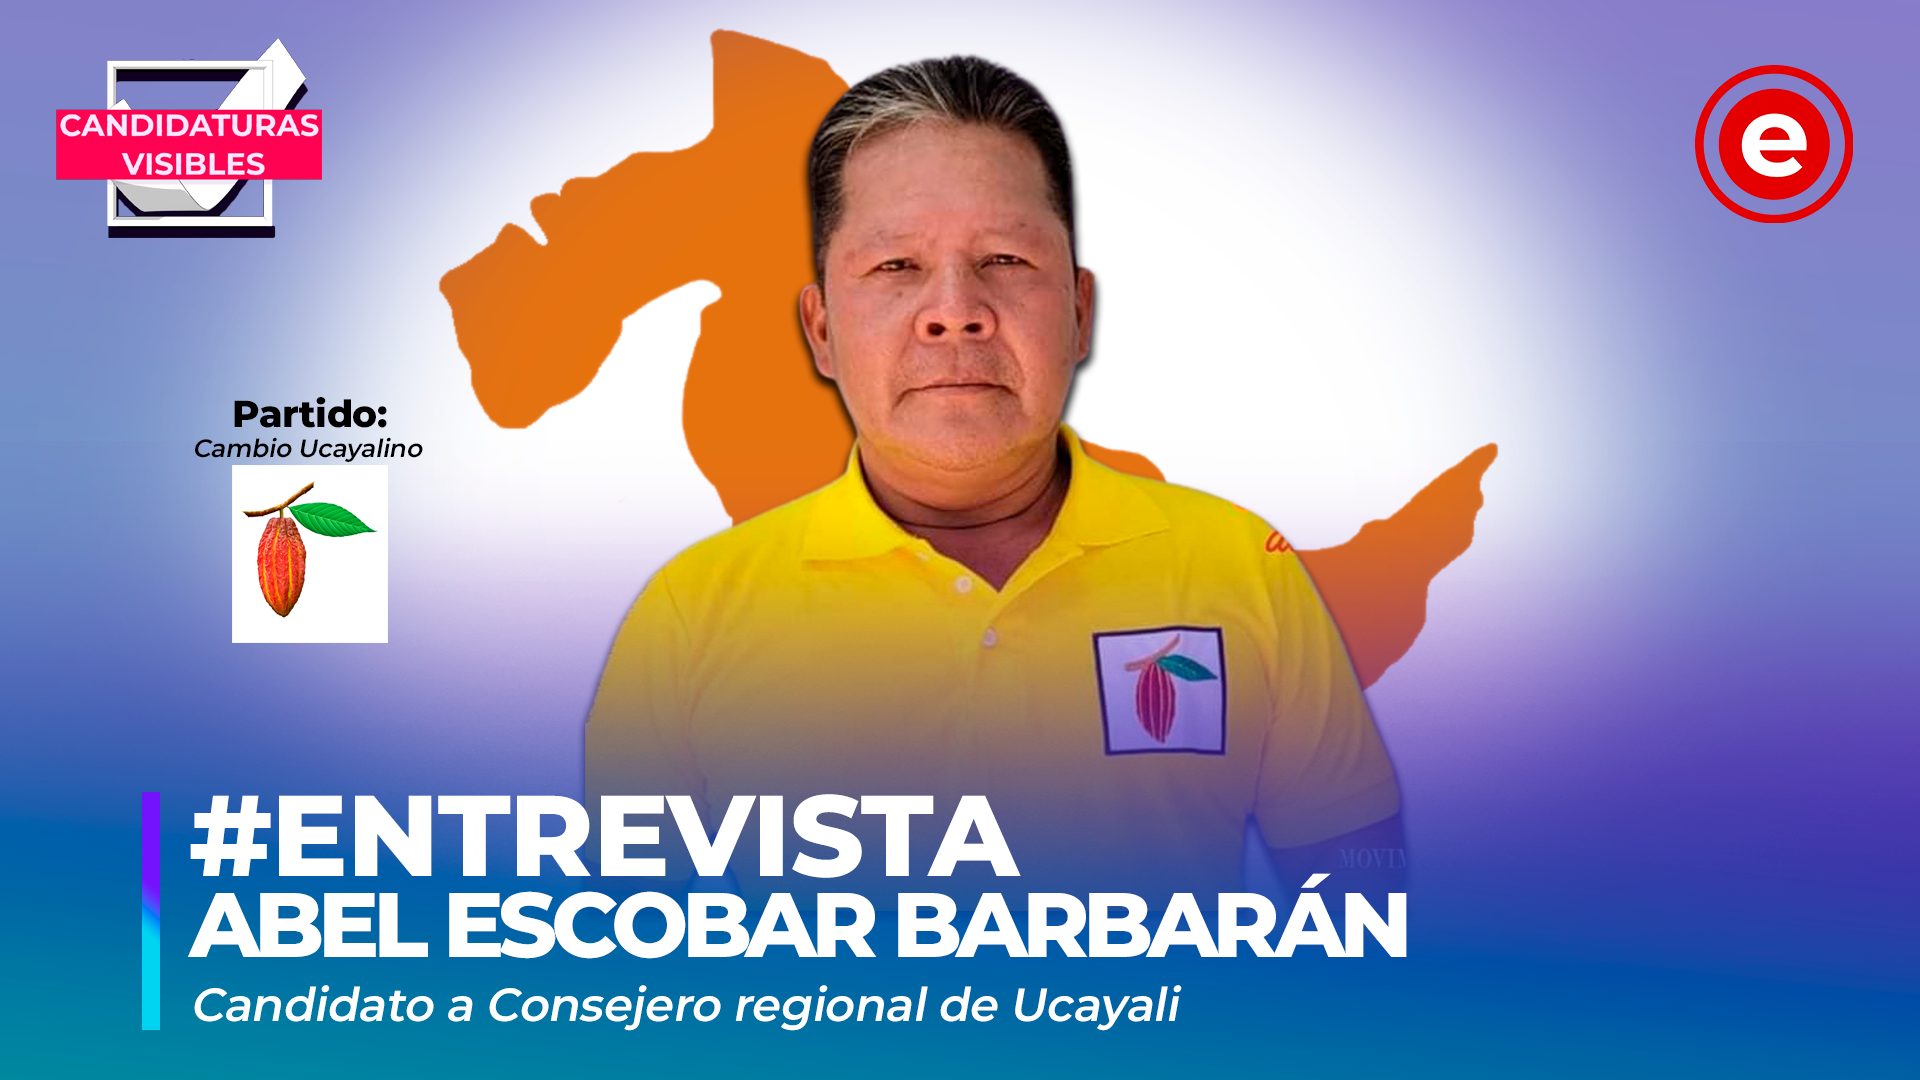 Candidaturas Visibles | Abel Escobar, candidato a consejero regional de Ucayali por Cambio Ucayalino